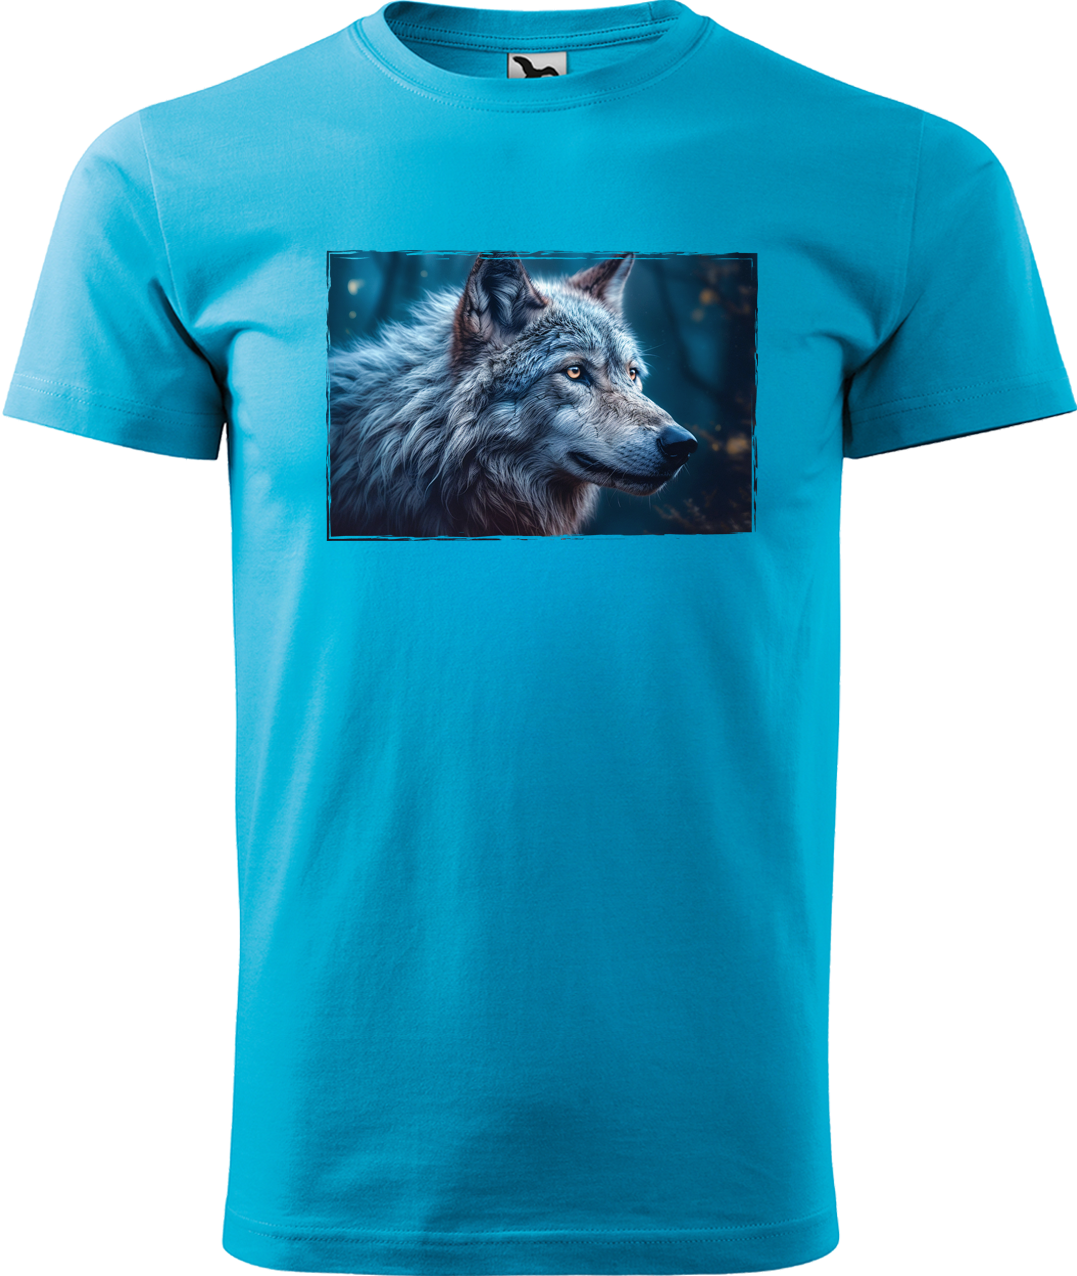 Pánské tričko s vlkem - Modrý vlk Velikost: L, Barva: Tyrkysová (44)